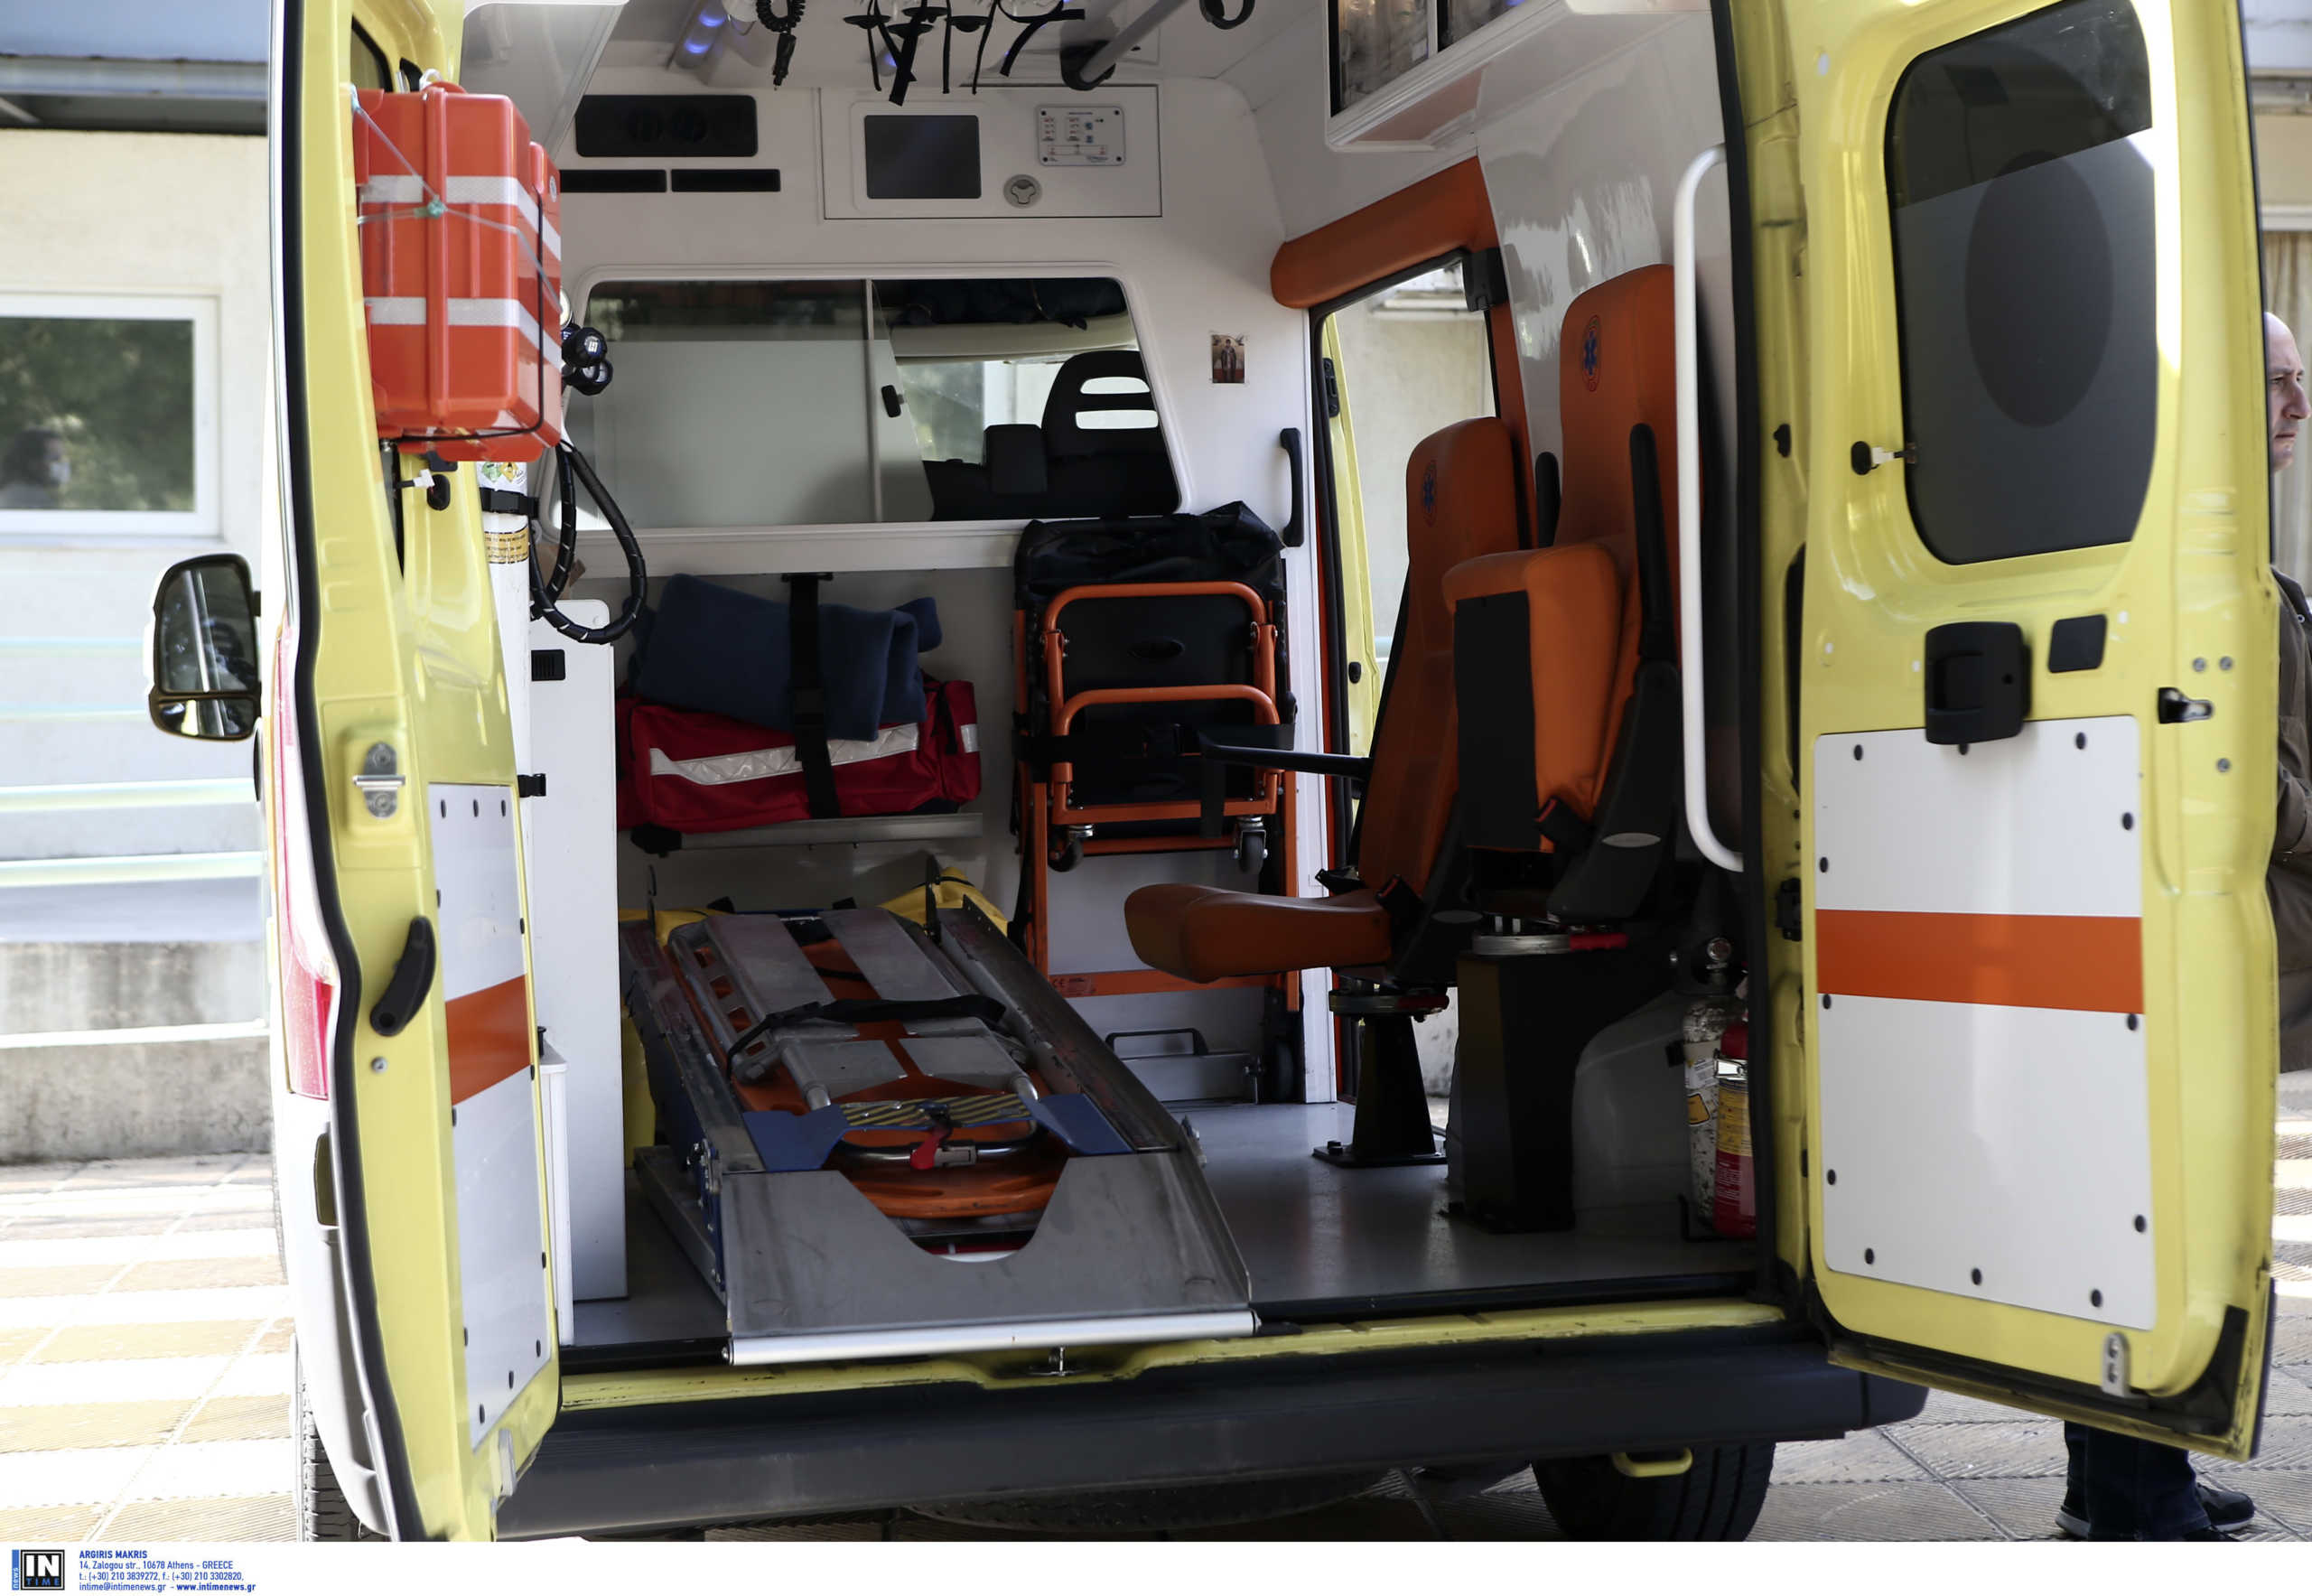 Χανιά: Βουτιά θανάτου από τον πέμπτο όροφο του νοσοκομείου – Σε κατάσταση σοκ οι αυτόπτες μάρτυρες